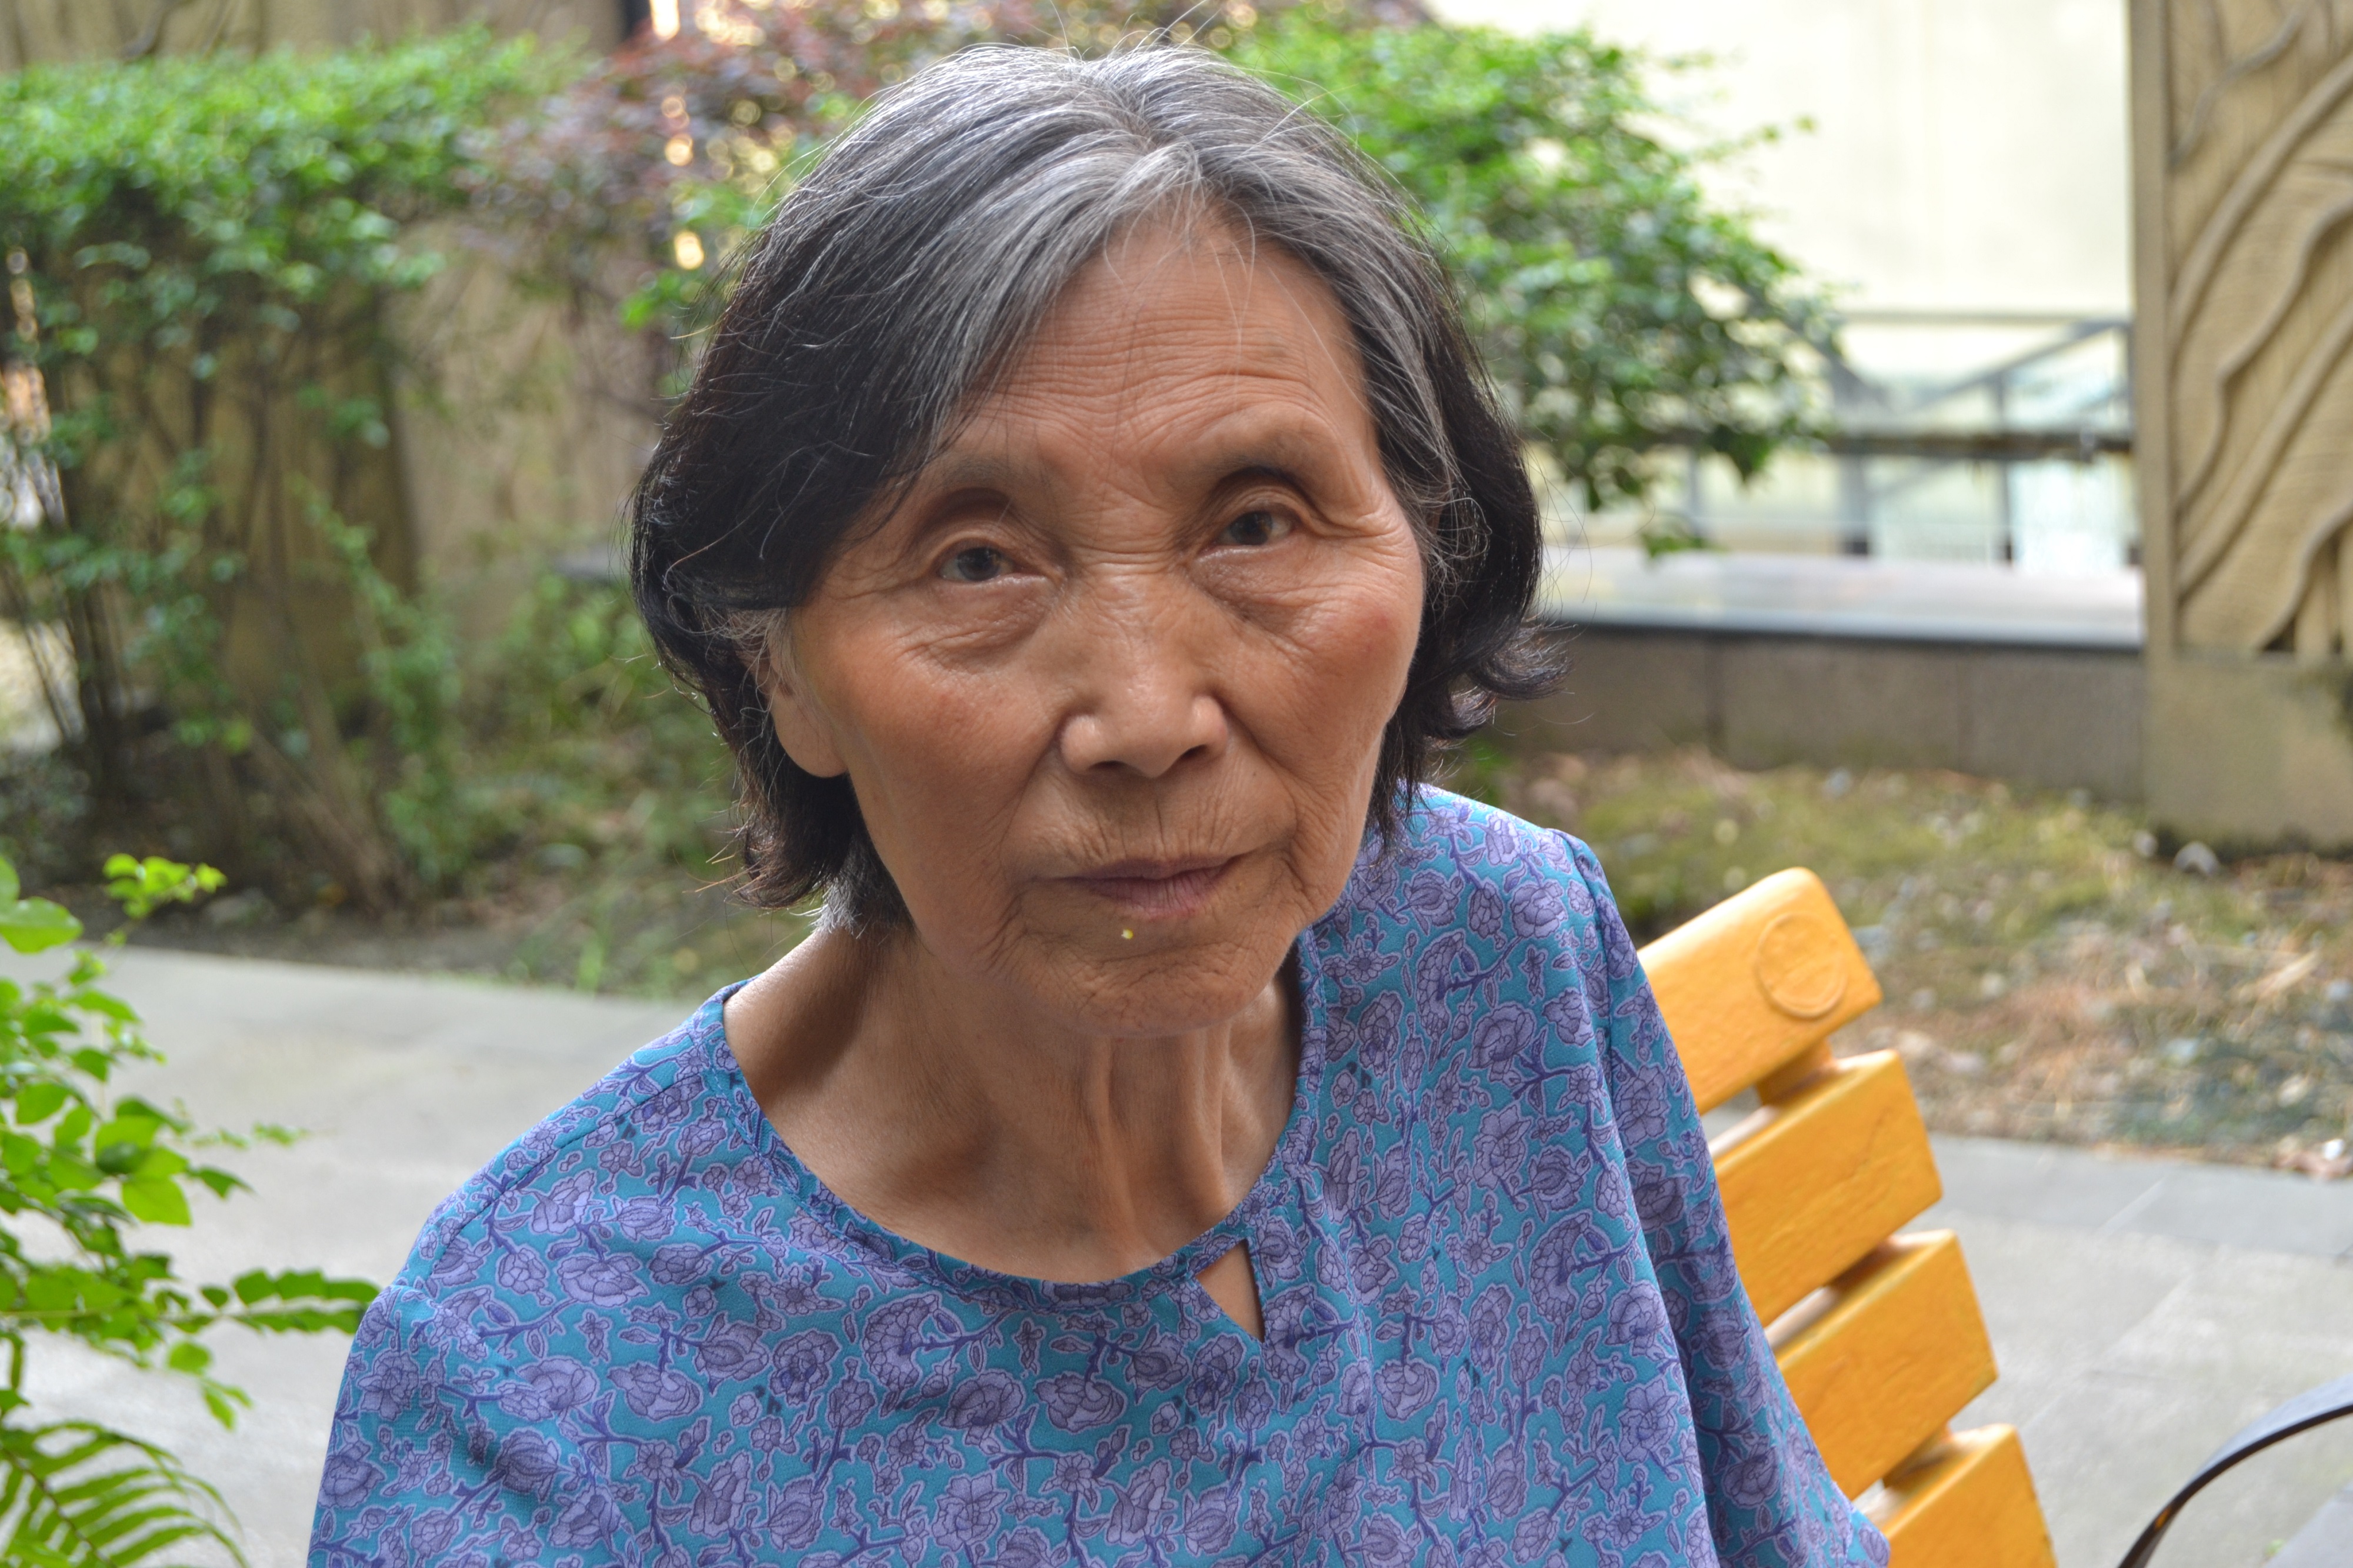 通透不做作耿直爽快直言,快80岁的老奶奶谈人生意义和人生价值